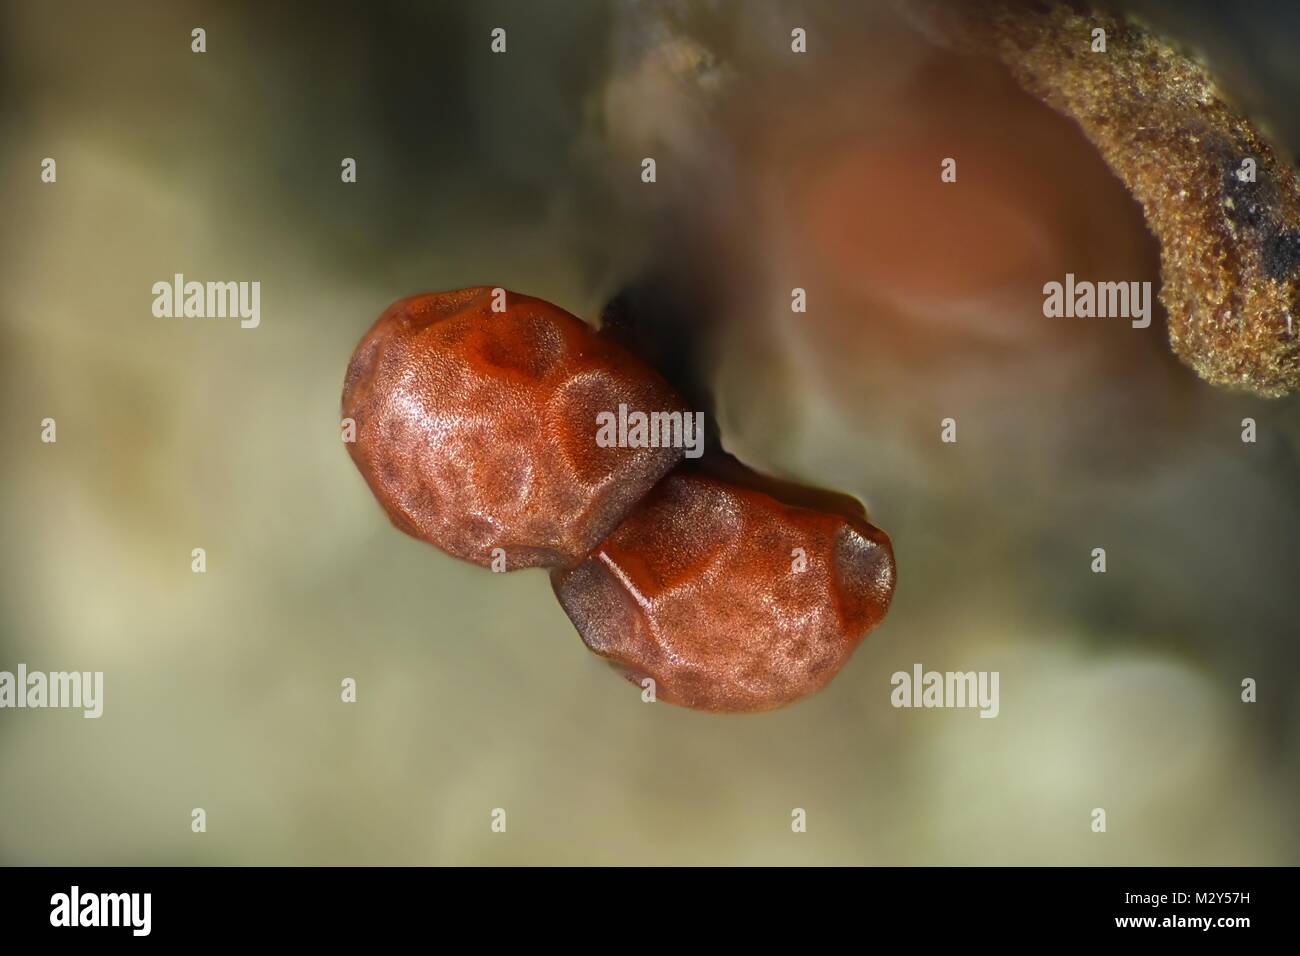 Myxomycète velues, Trichia varia, une image du microscope. Champ de vision de l'image est de 3 mm. Banque D'Images